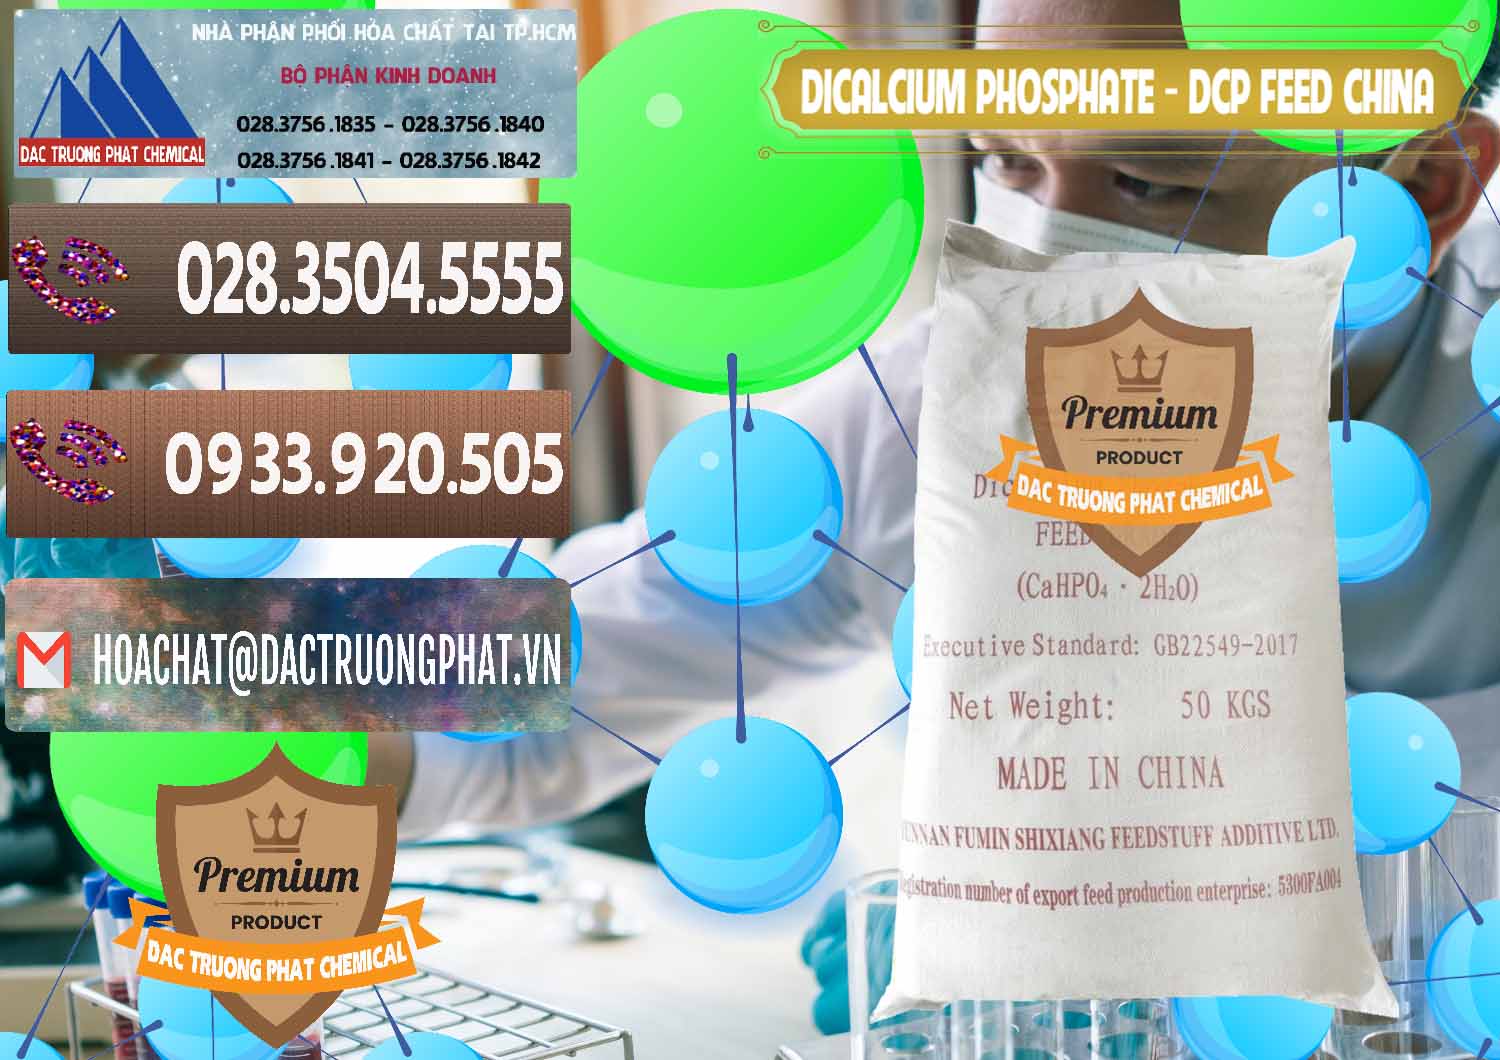 Phân phối - bán Dicalcium Phosphate - DCP Feed Grade Trung Quốc China - 0296 - Đơn vị chuyên phân phối ( bán ) hóa chất tại TP.HCM - hoachatviet.net